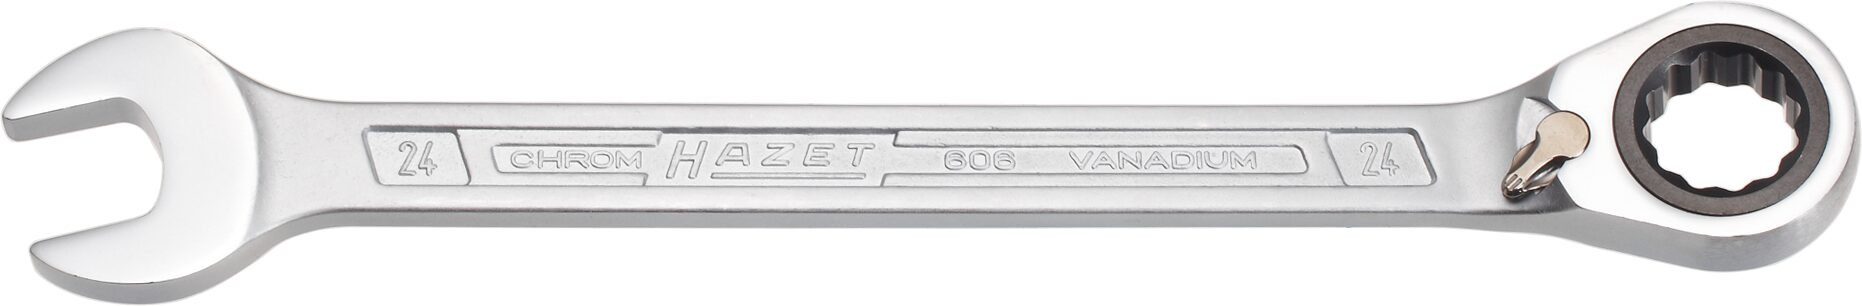 HAZET Ringgaffelnøgle med skralde 24 mm (606-24)